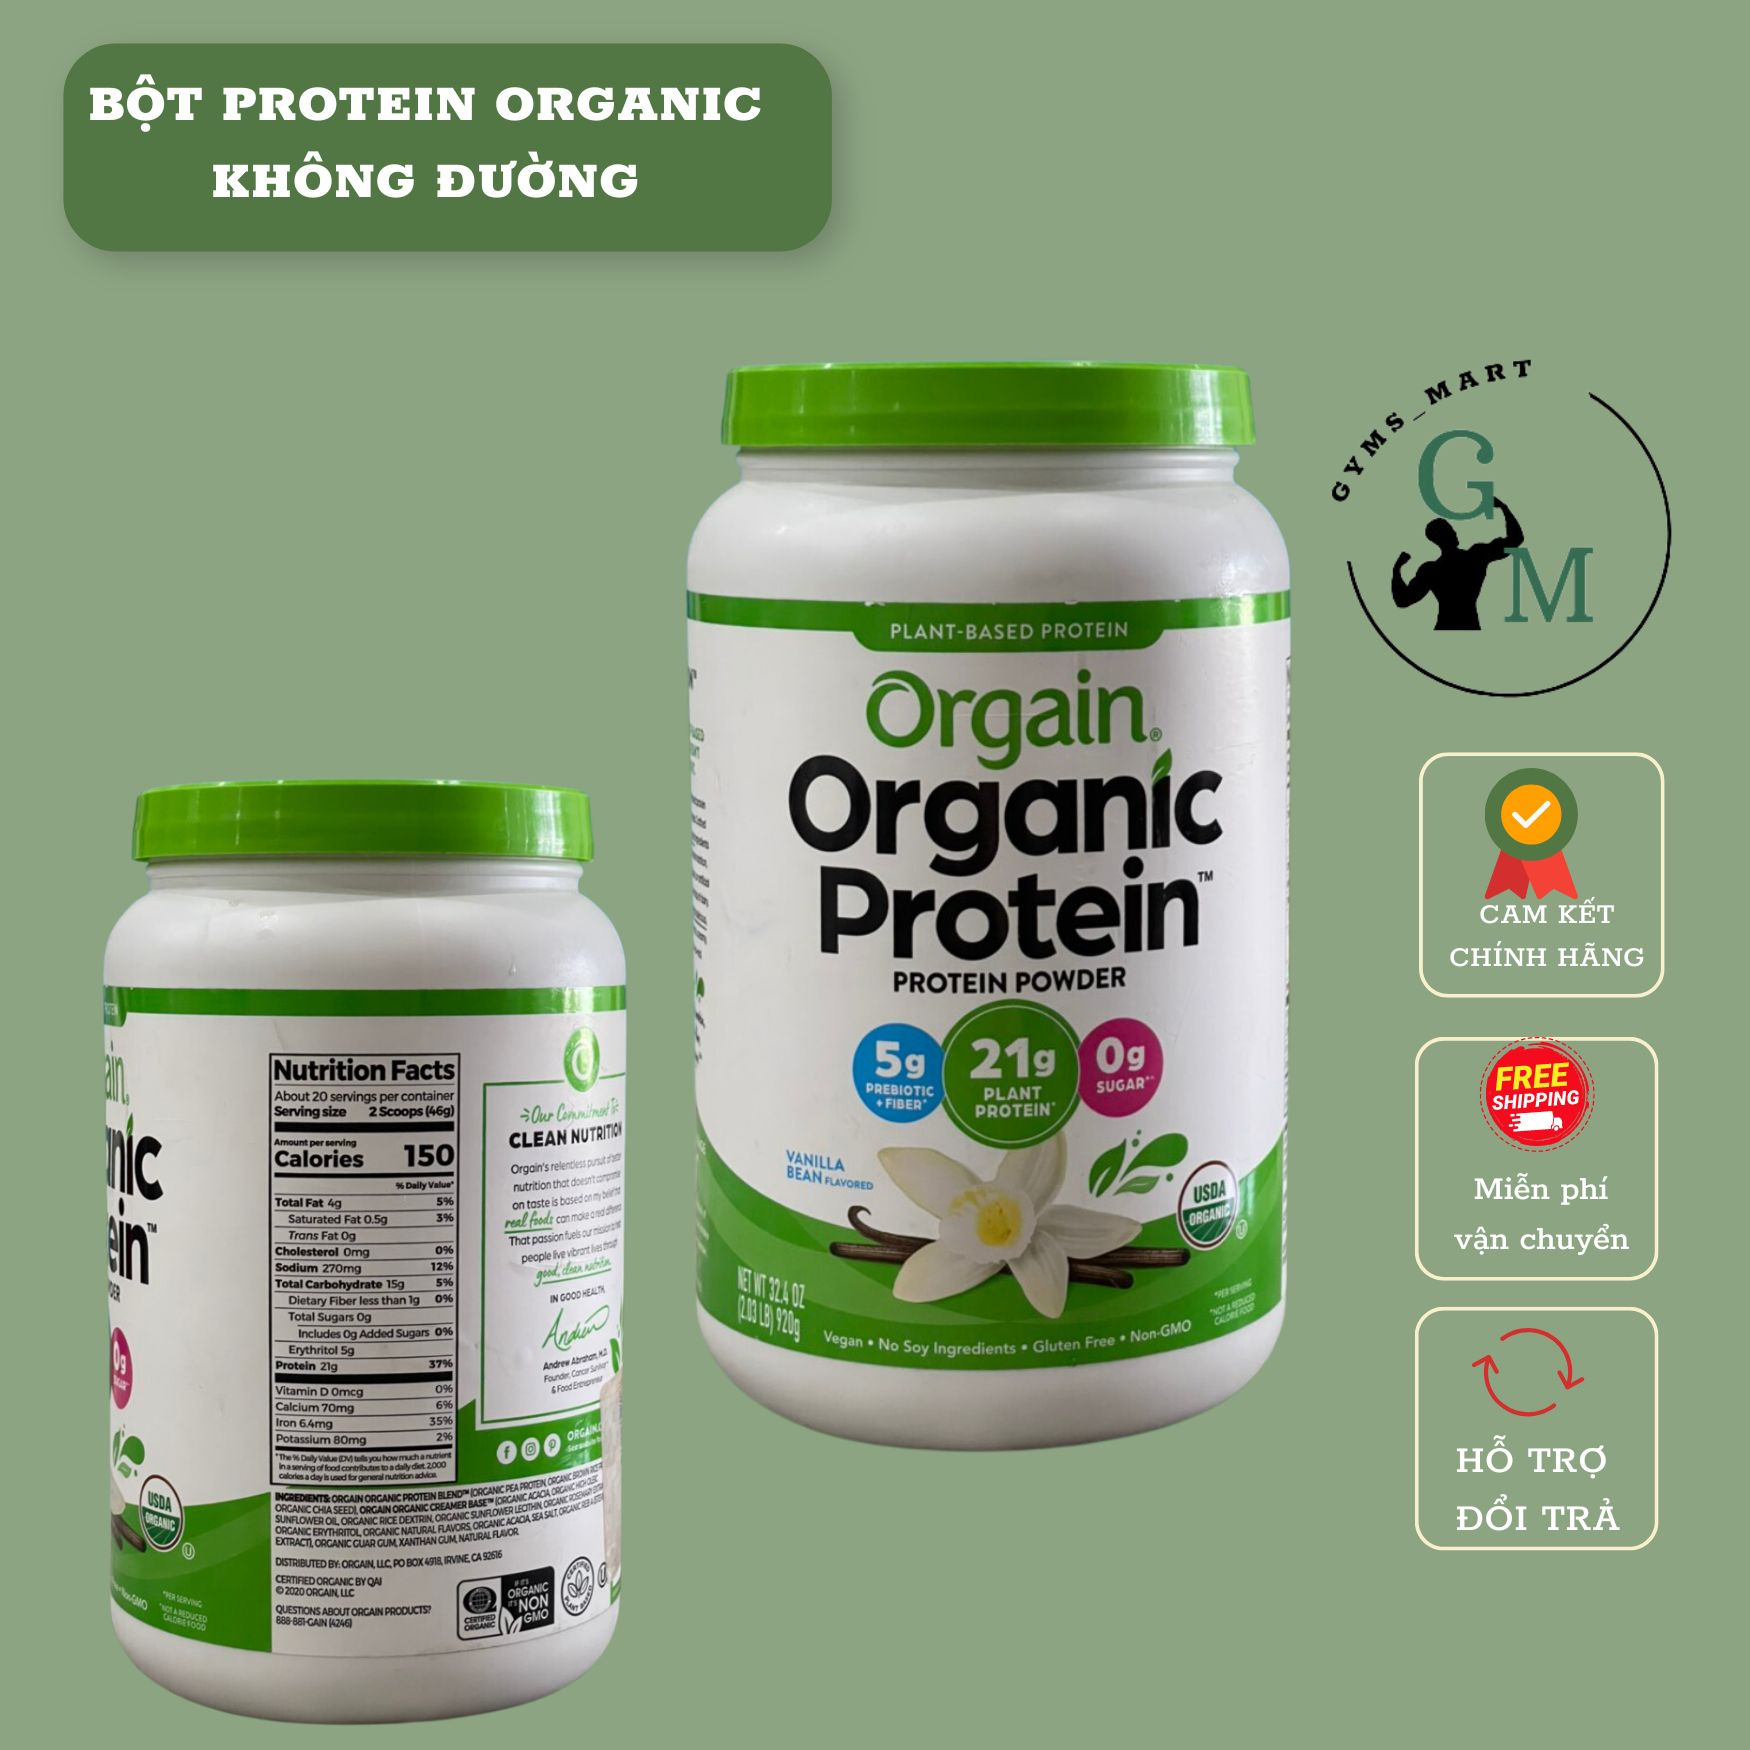 Bột Protein không đường, thực vật hữu cơ Orgain Organic Protein nhập khẩu Mỹ  -hỗ trợ ăn kiêng, ăn chay, giảm cân